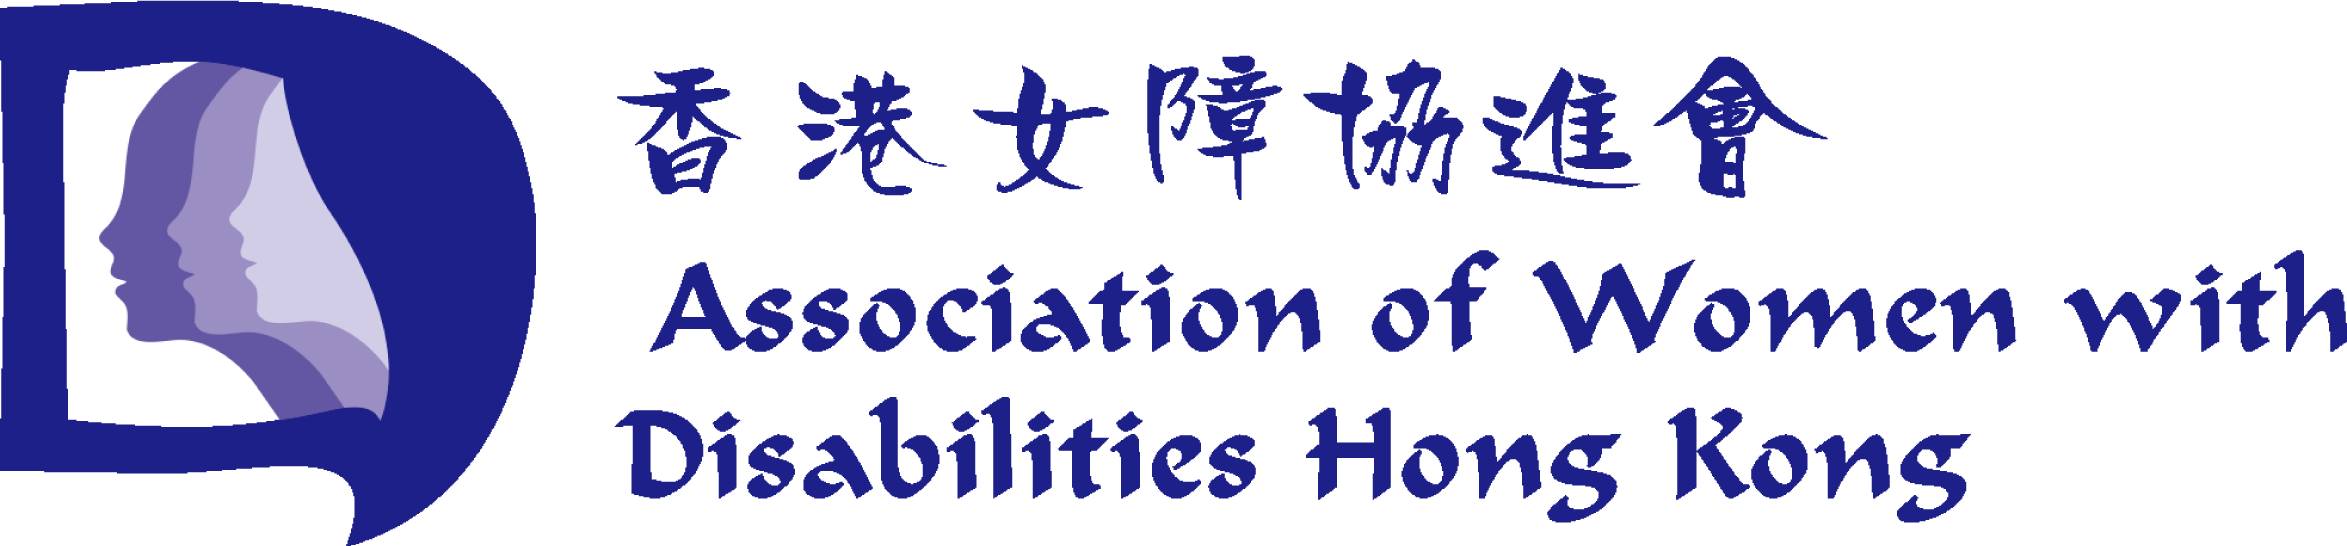 Association of Women with Disabilities Hong Kong